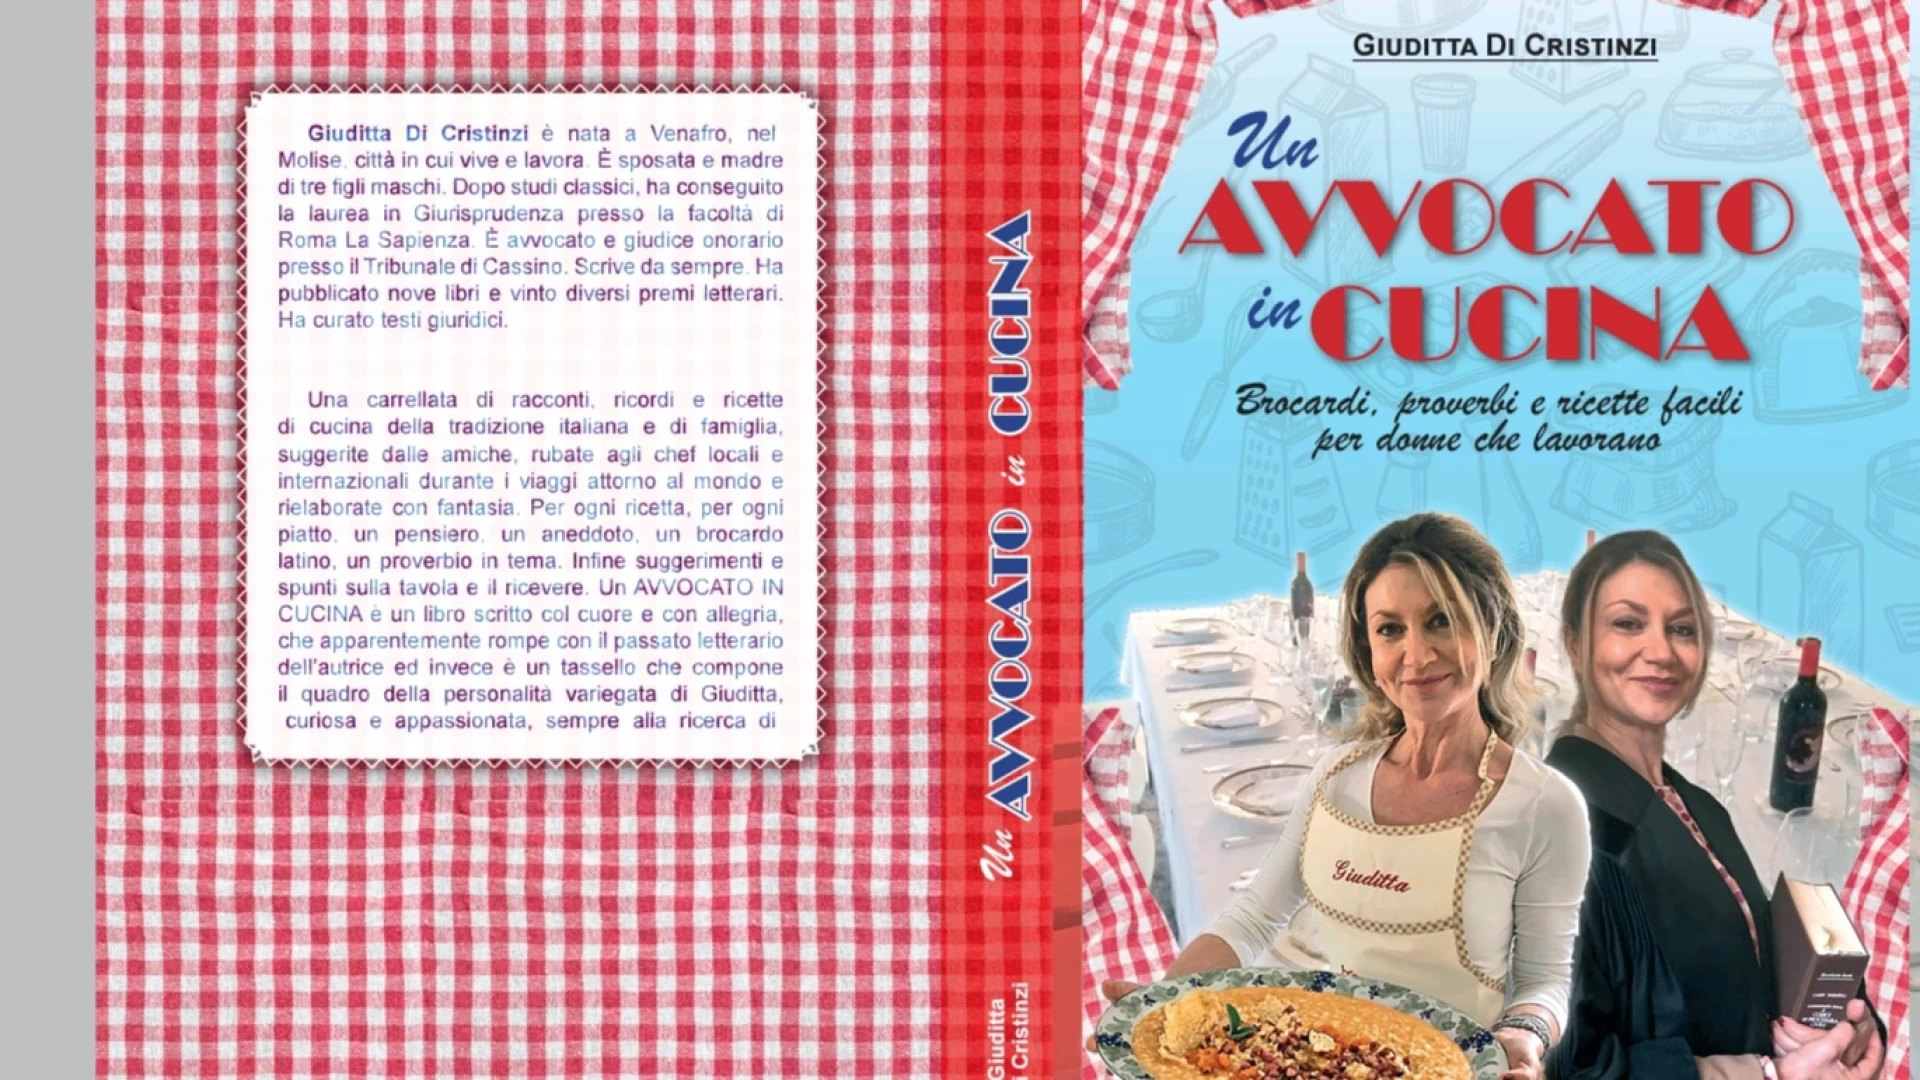 Venafro: in vendita su Amazon il nuovo libro di Giuditta Di Cristinzi dal titolo "Un avvocato in cucina".